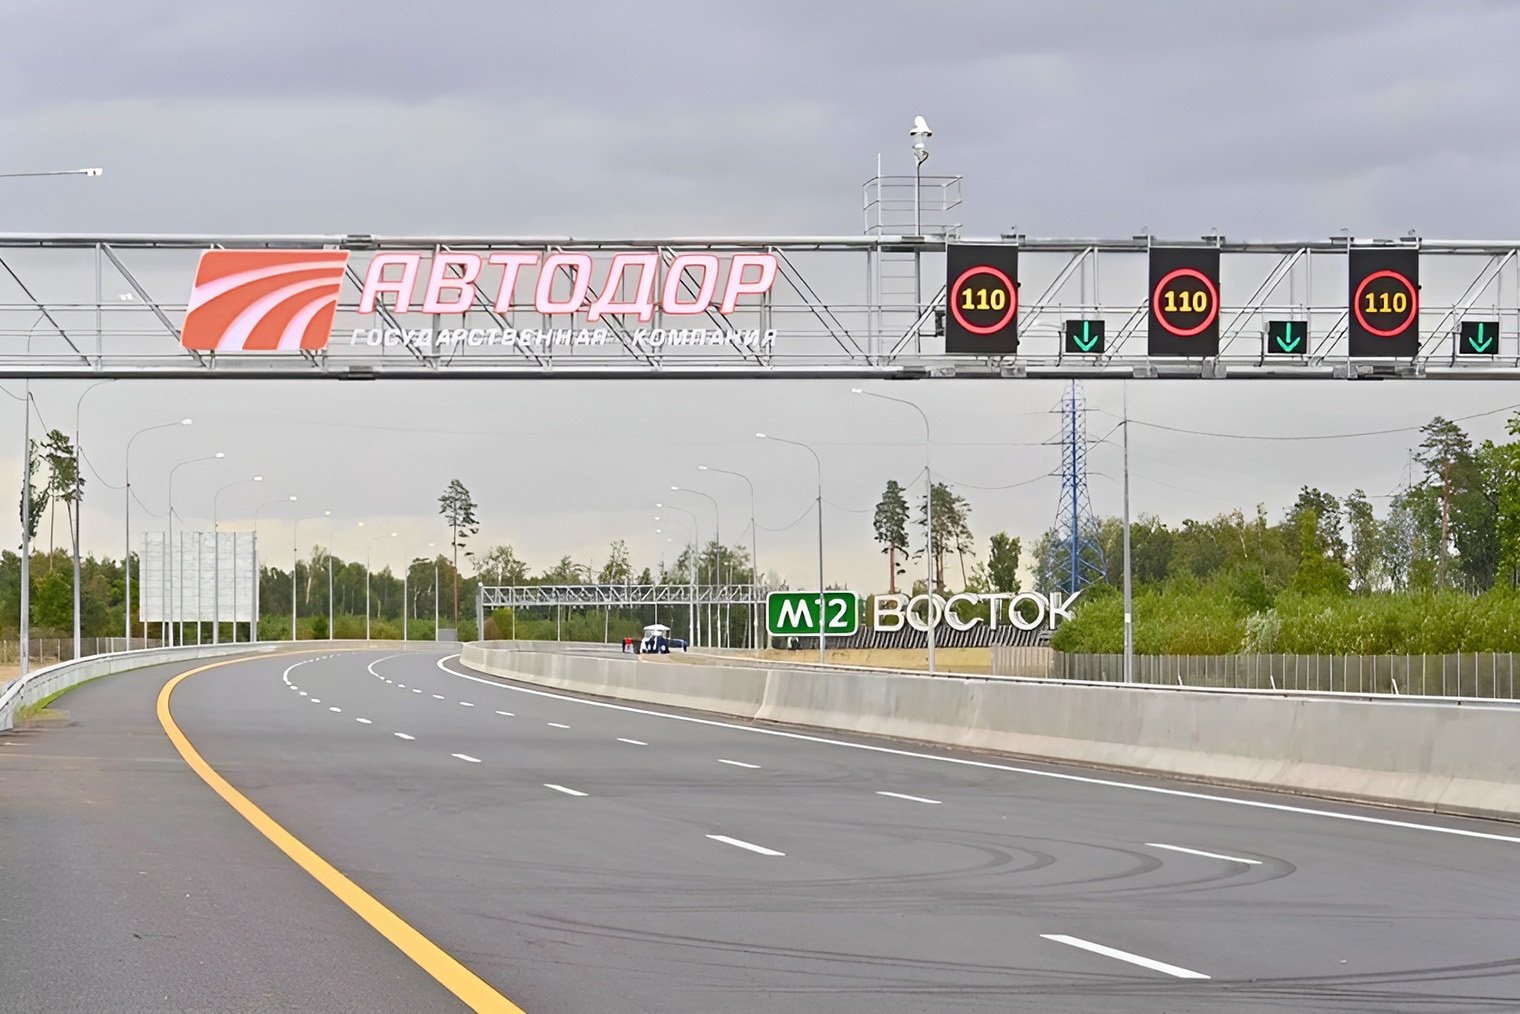 Трассу М12 в перспективе продлят до Китая, поэтому ее назвали «Восток». Источник: «Яндекс Карты»